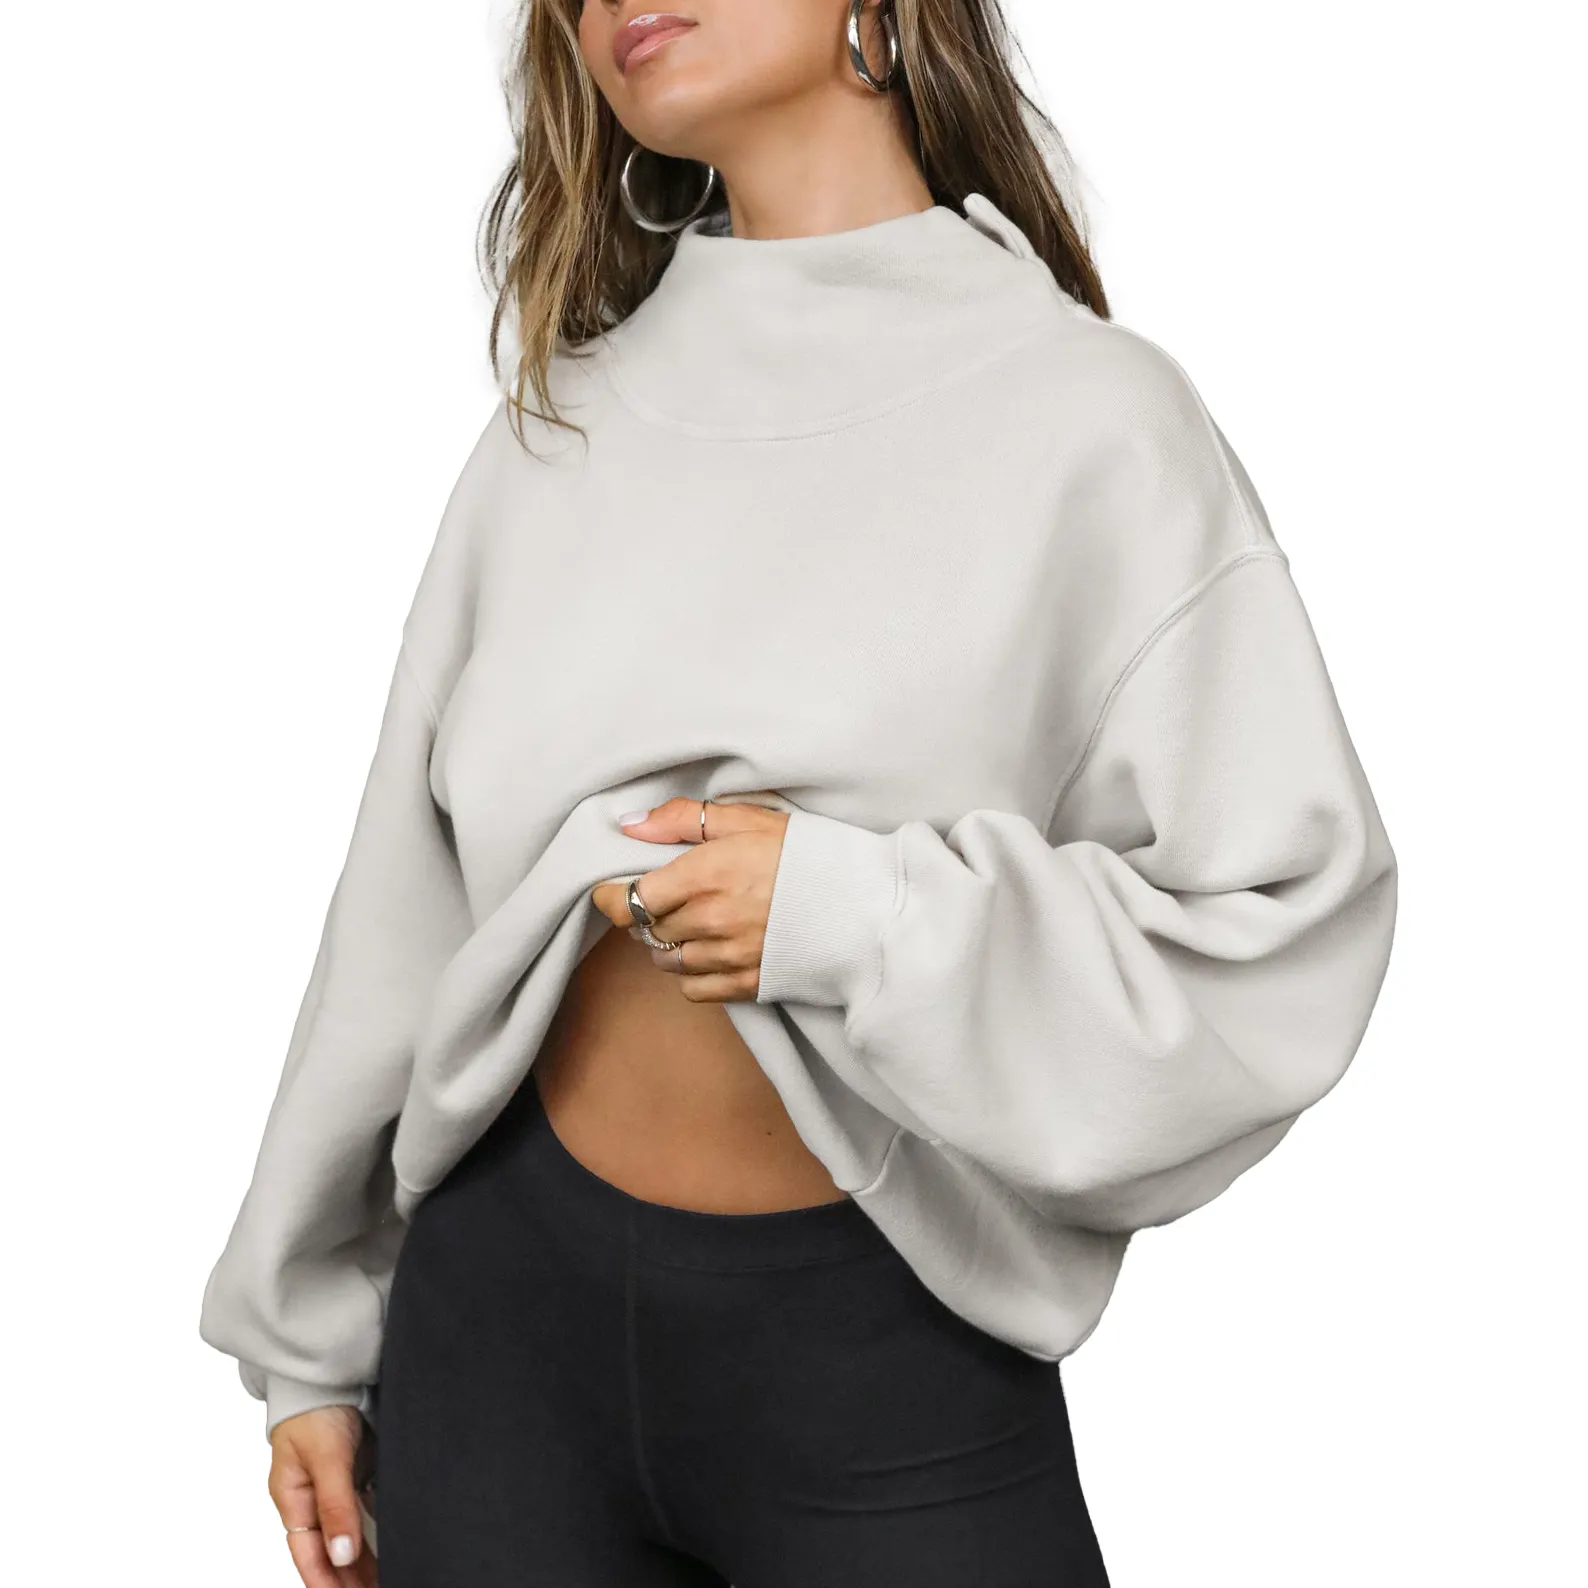 Mujeres cómodo francés Terry 100% algodón manga larga jersey de gran tamaño Sudadera de cuello alto